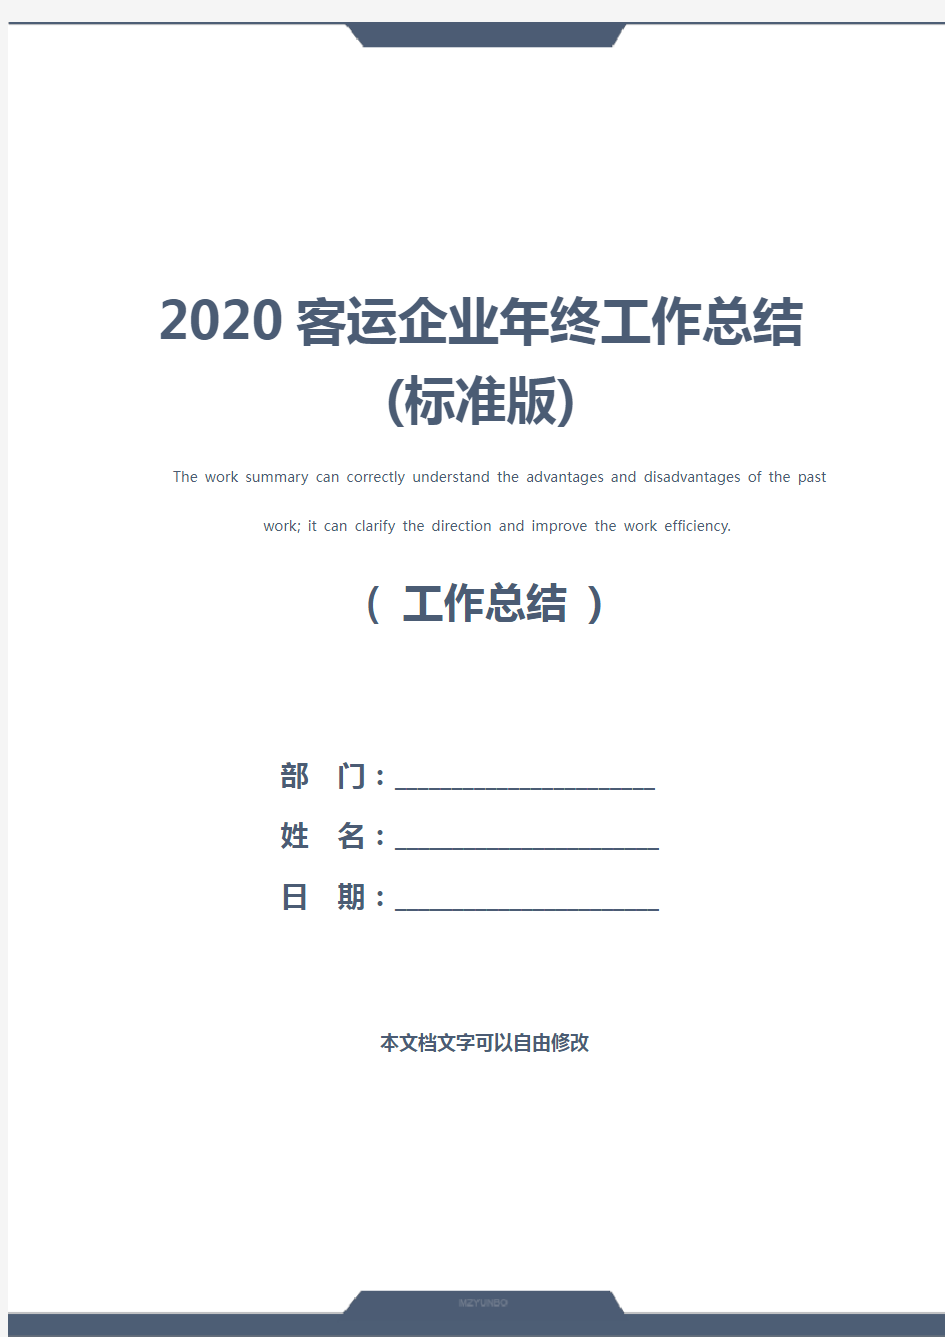 2020客运企业年终工作总结(标准版)